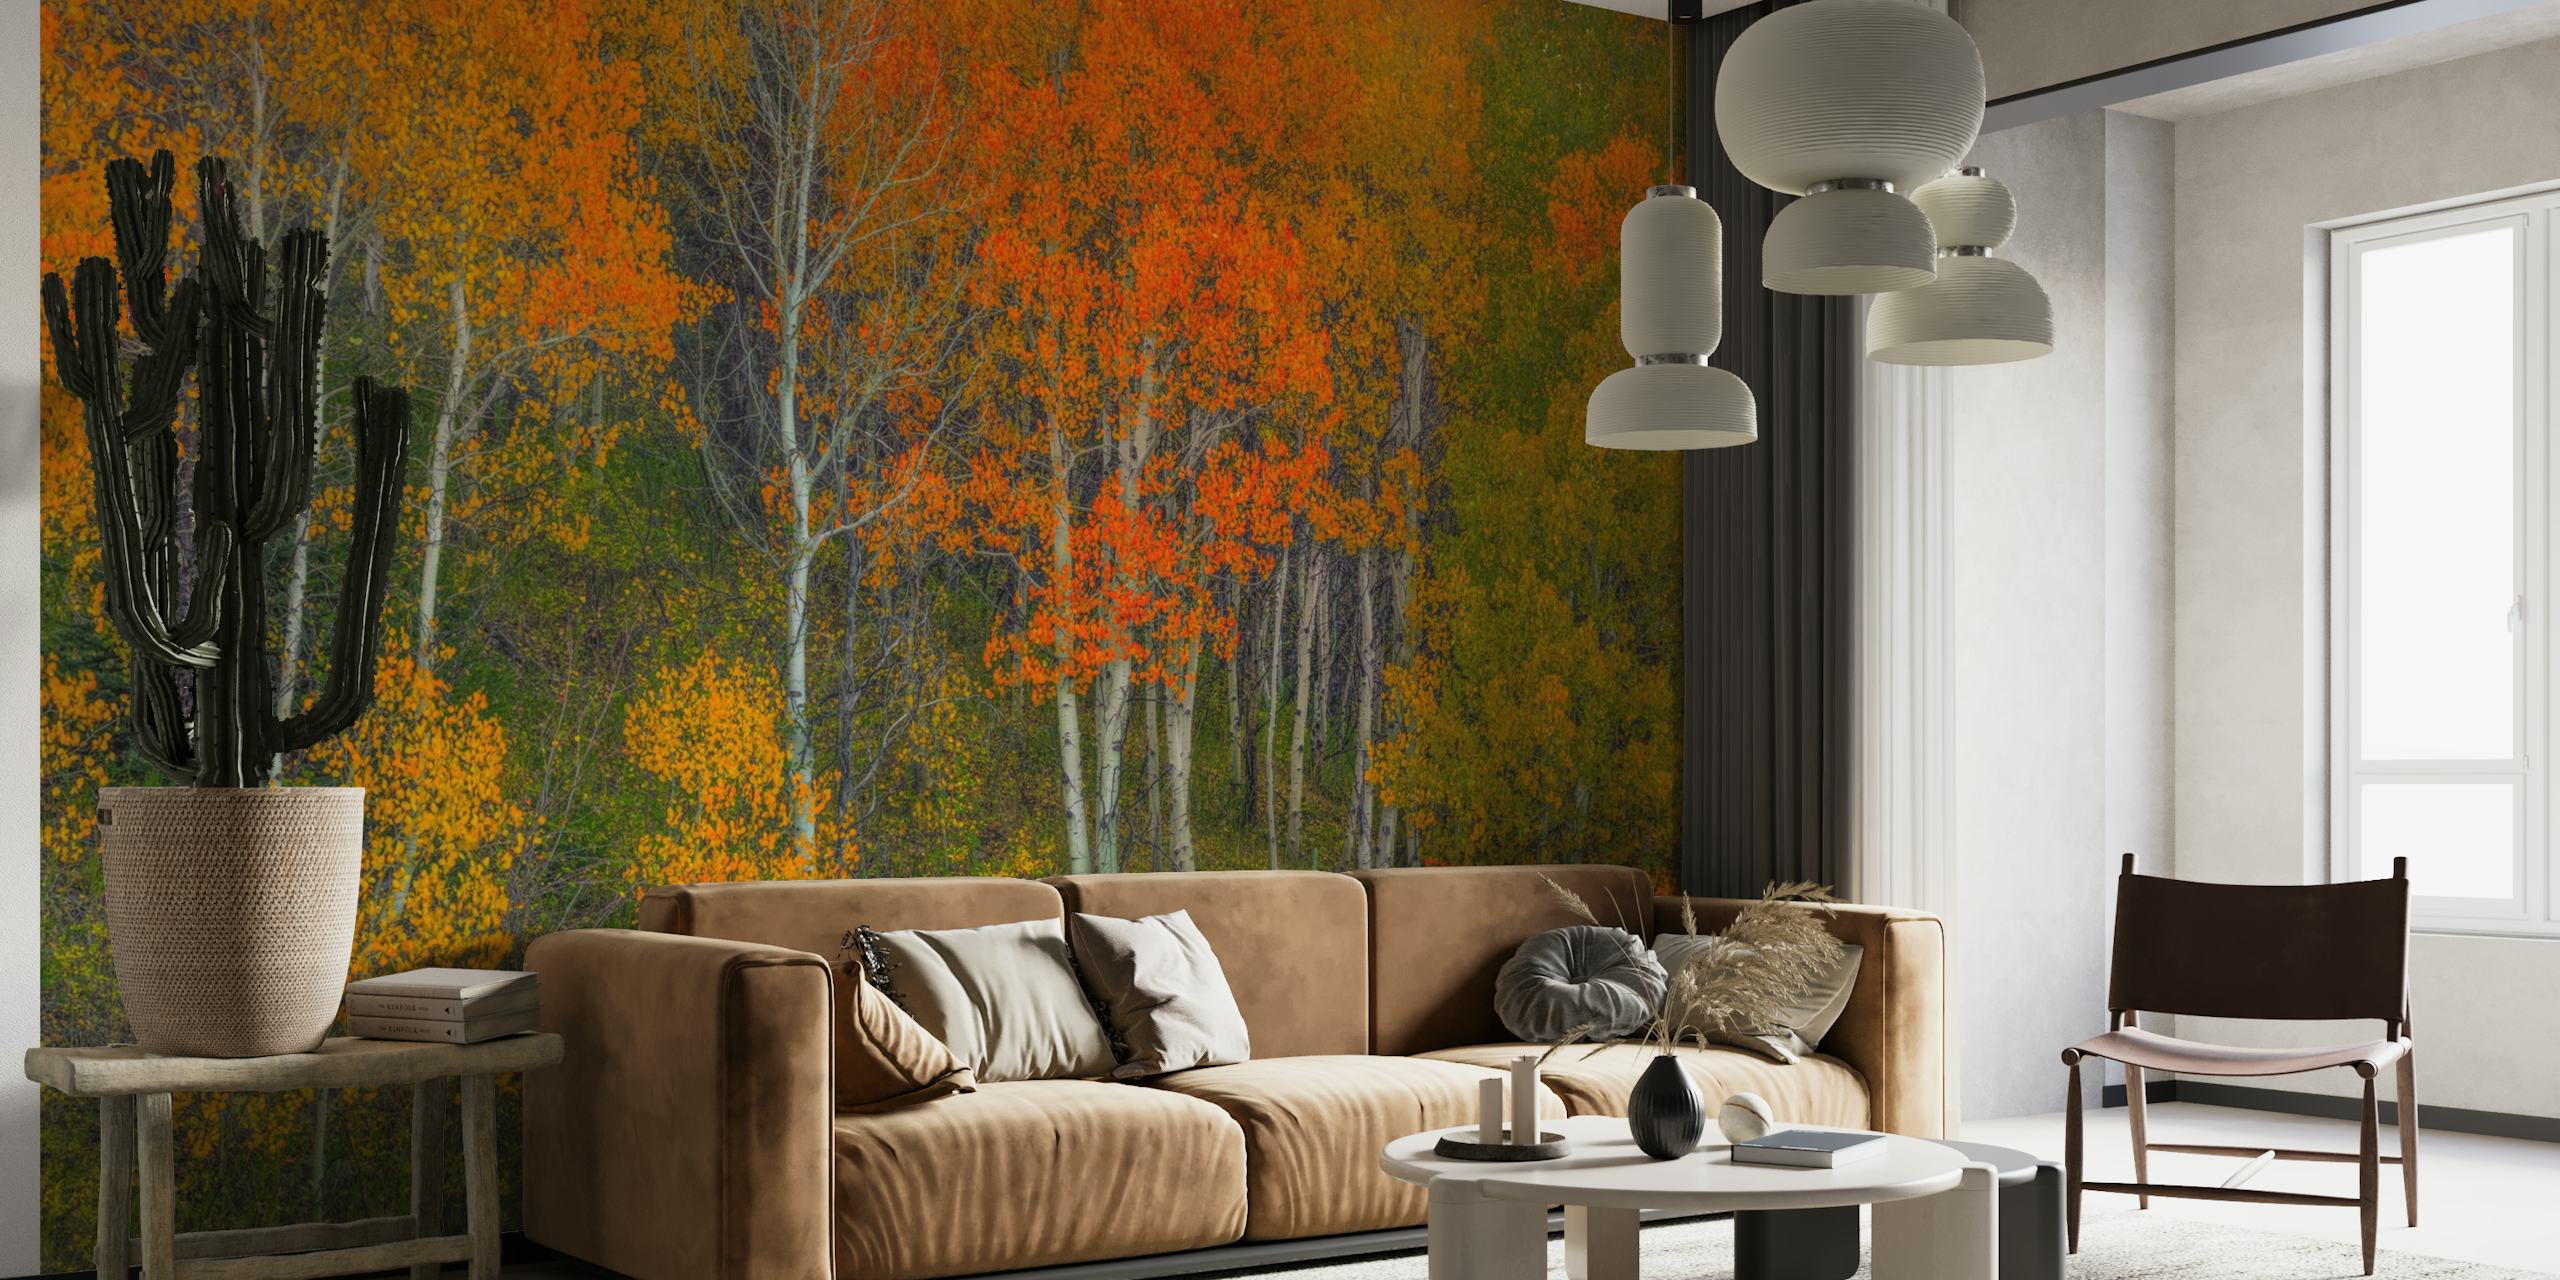 Fototapeta s podzimní lesní scénou s jasně oranžovými, červenými a žlutými barvami